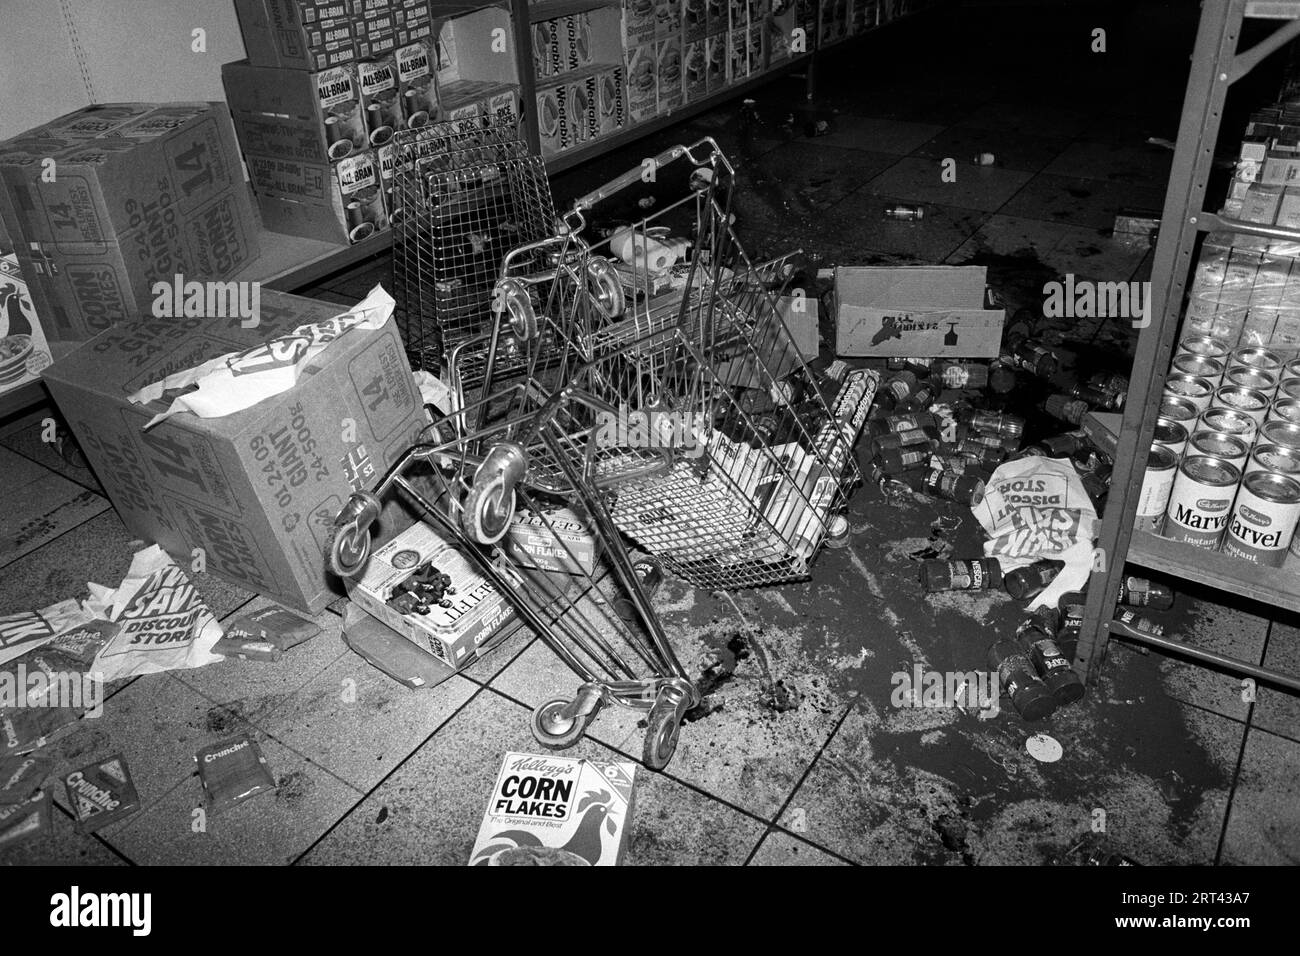 Toxteth Riot, Royaume-Uni 1981 Un supermarché local pillé. Liverpool 8 Lancashire juillet 1980s HOMER SYKES Banque D'Images